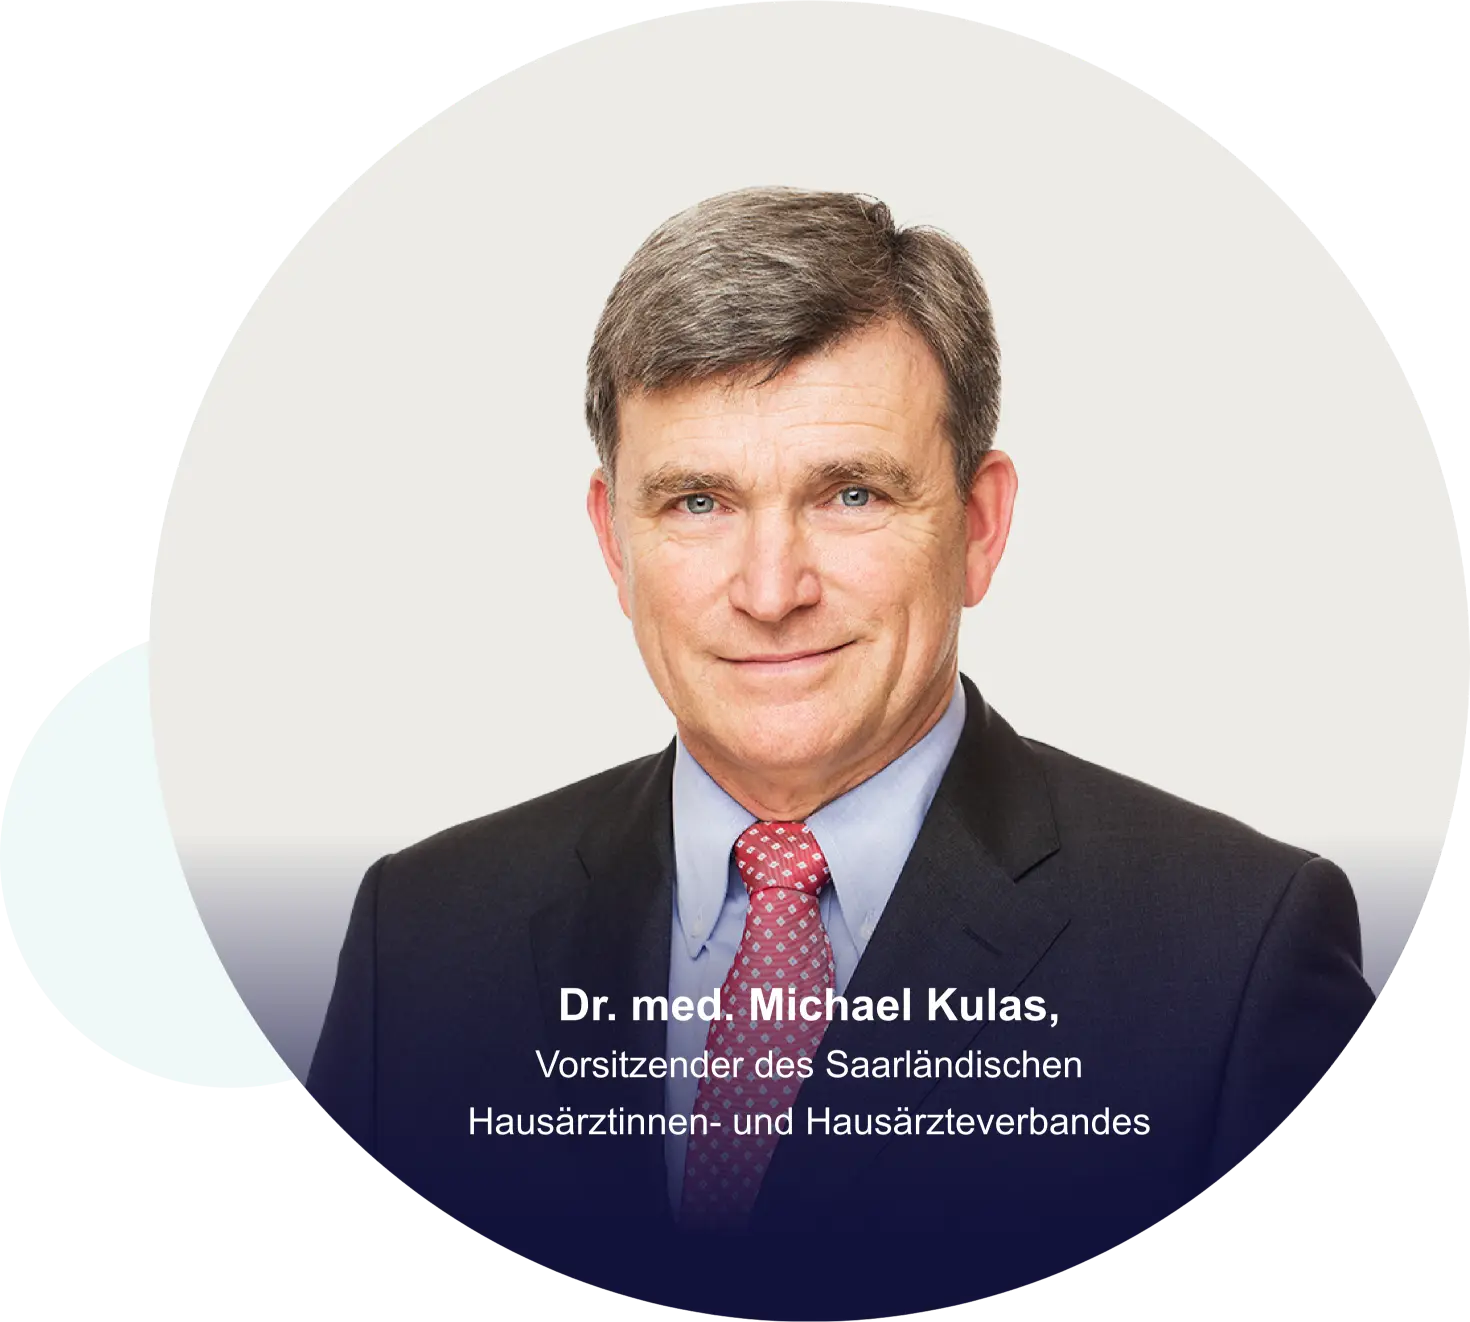 Dr. med. Michael Kulas